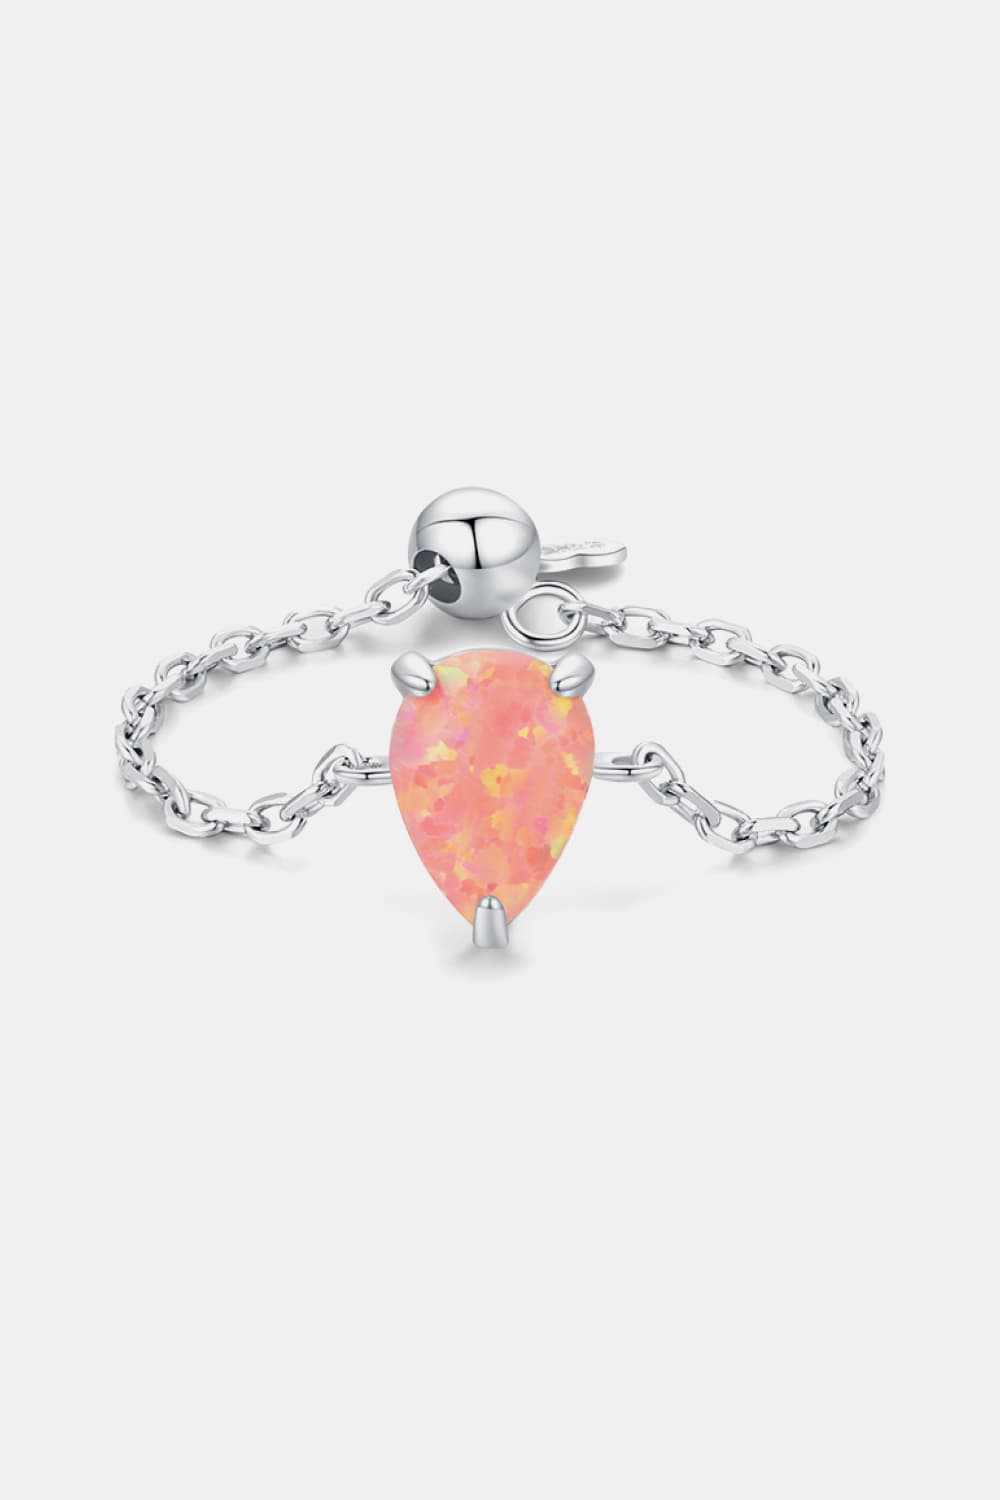 Adjustable Opal Ring - Tangerine Goddess